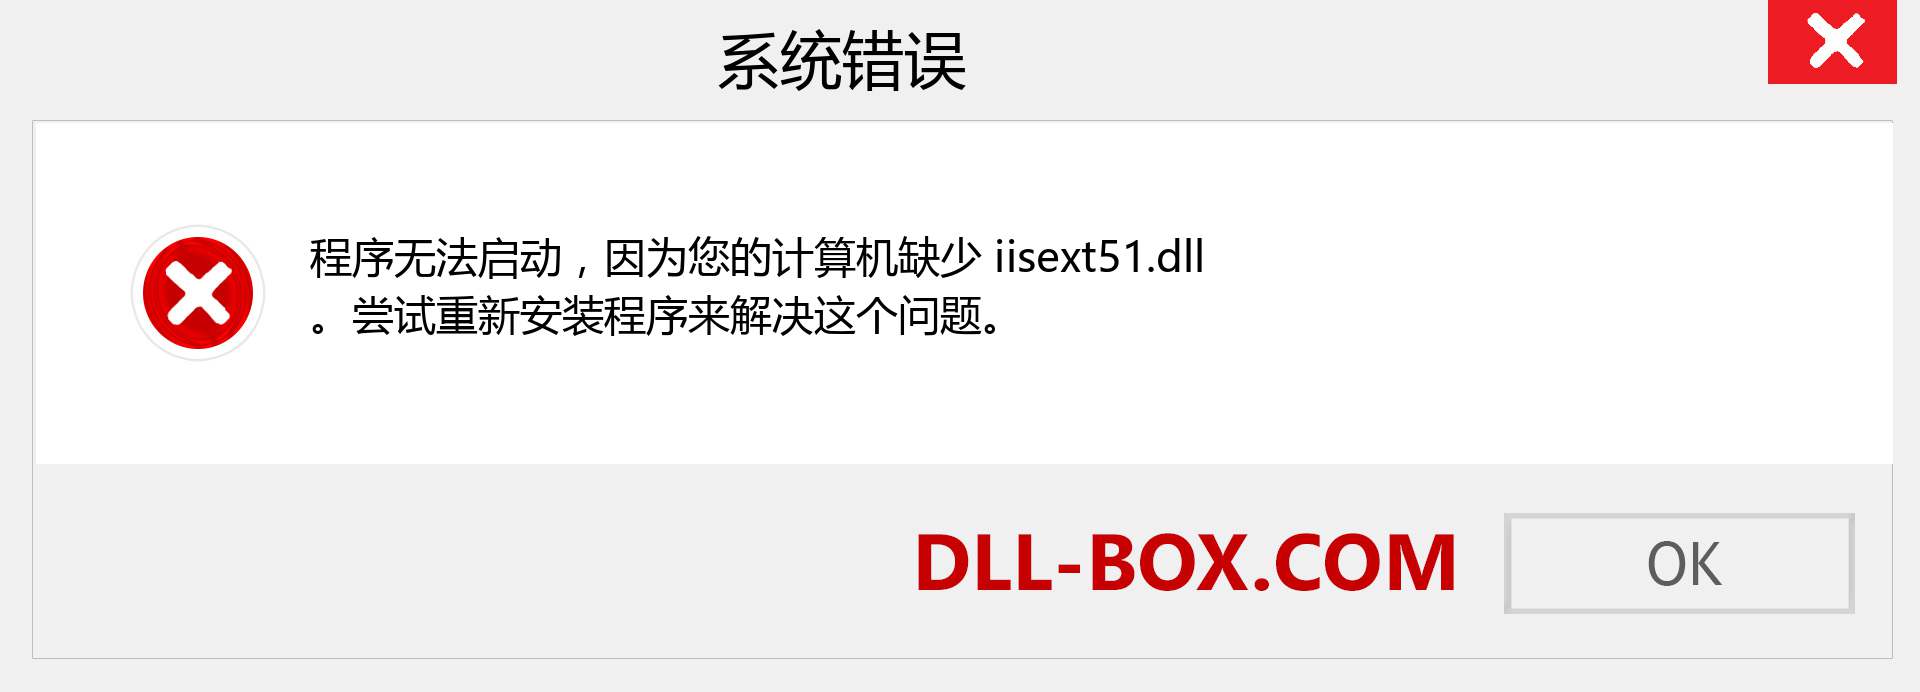 iisext51.dll 文件丢失？。 适用于 Windows 7、8、10 的下载 - 修复 Windows、照片、图像上的 iisext51 dll 丢失错误